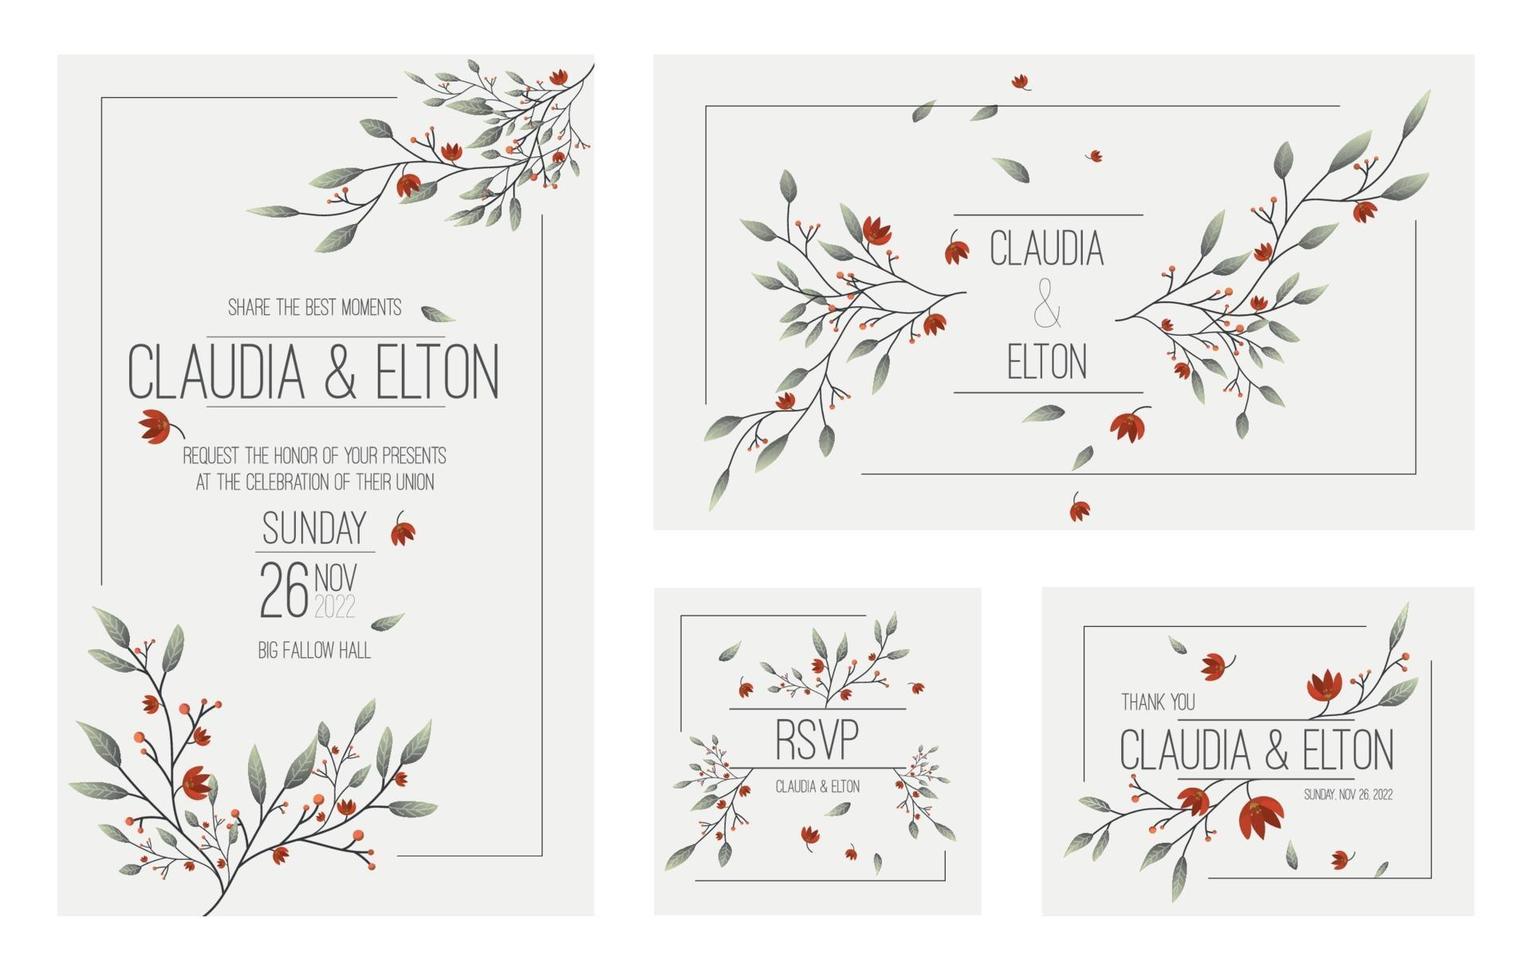 Floral Wedding Invitation vector